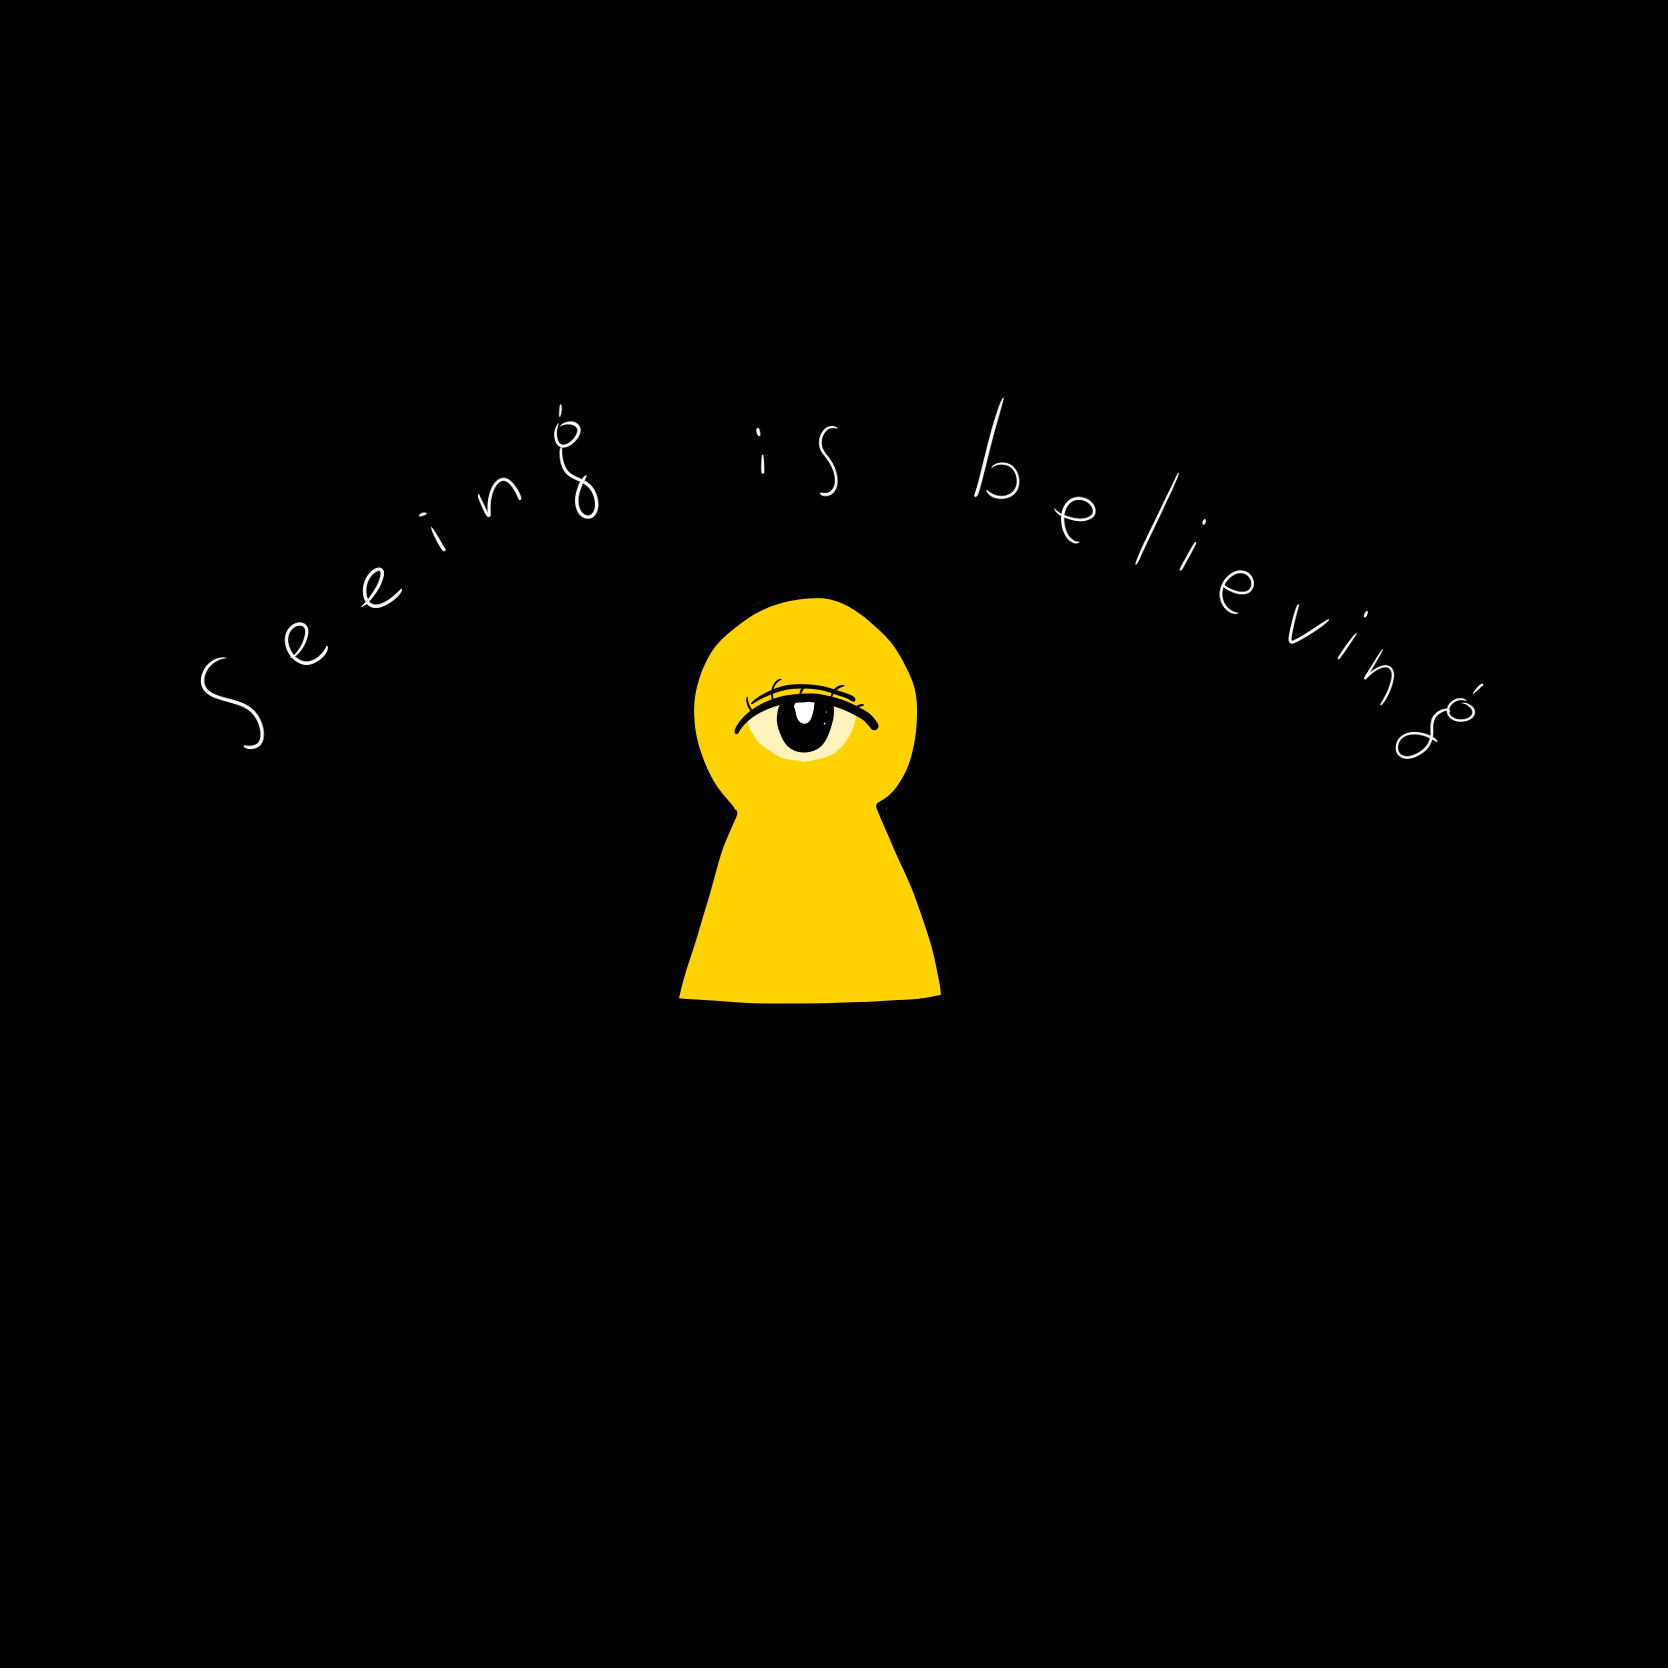 seeing is believing